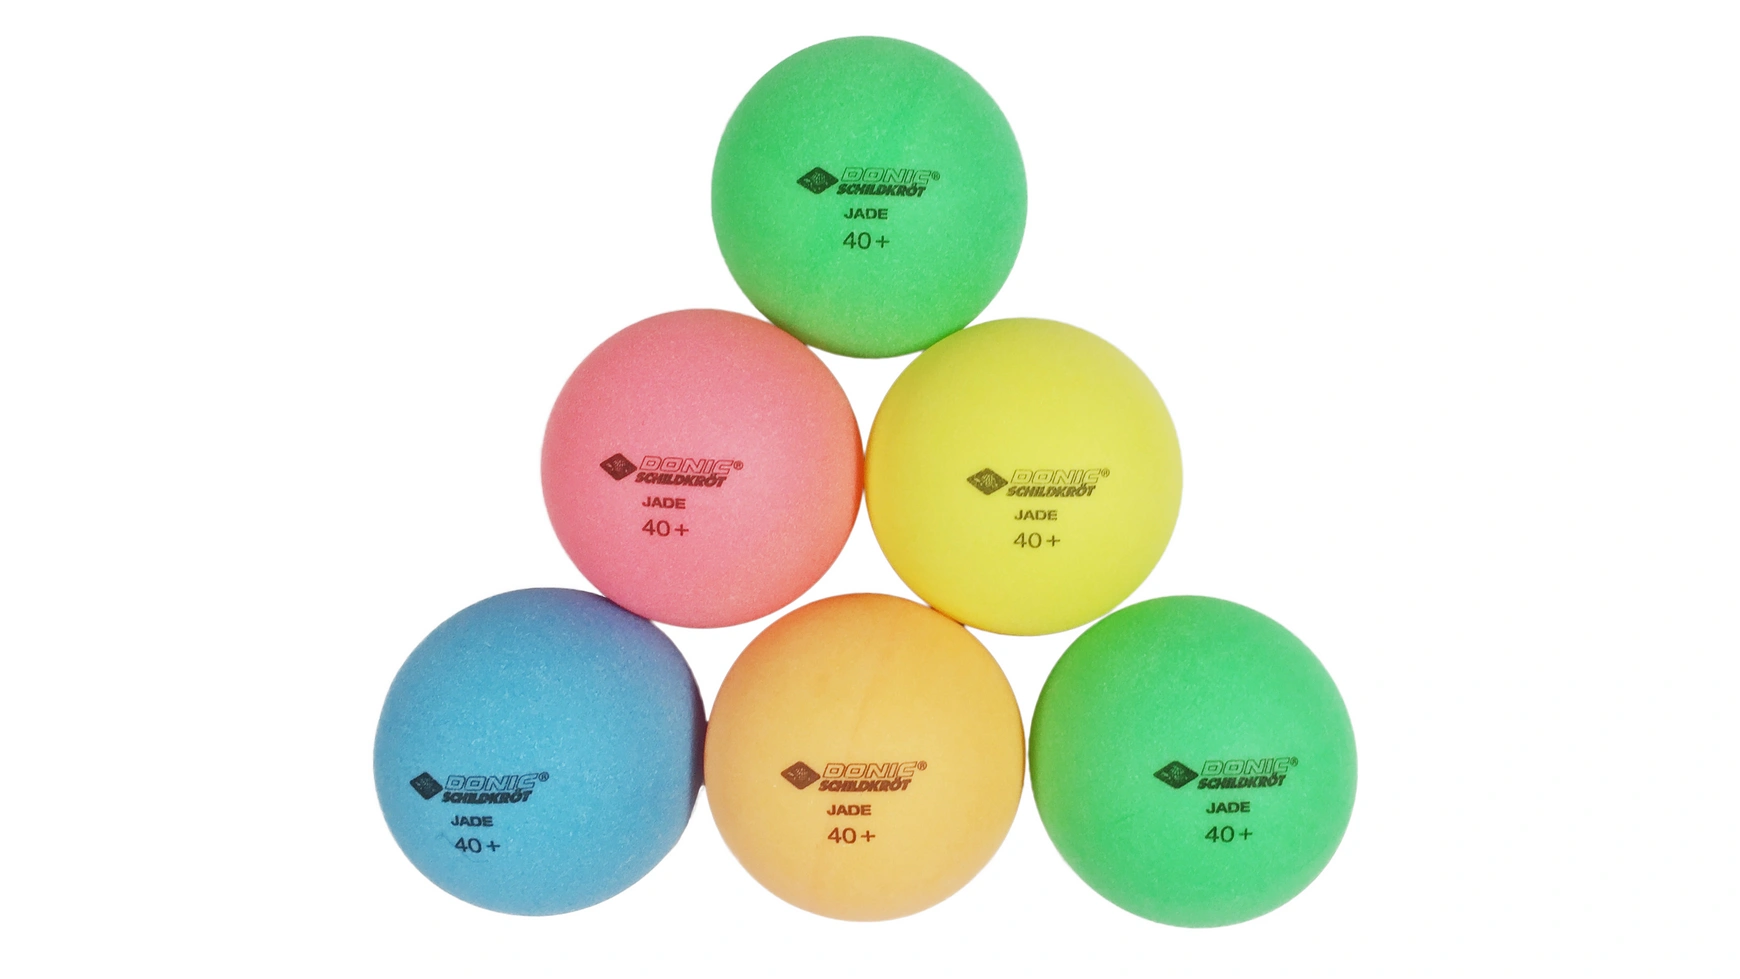 Donic Schildkröt Мяч для настольного тенниса Color Popps, 6 цветных шариков качества Poly 40+ мяч для настольного тенниса donic schildkroet elite 1 арт 608310 3 шт белый